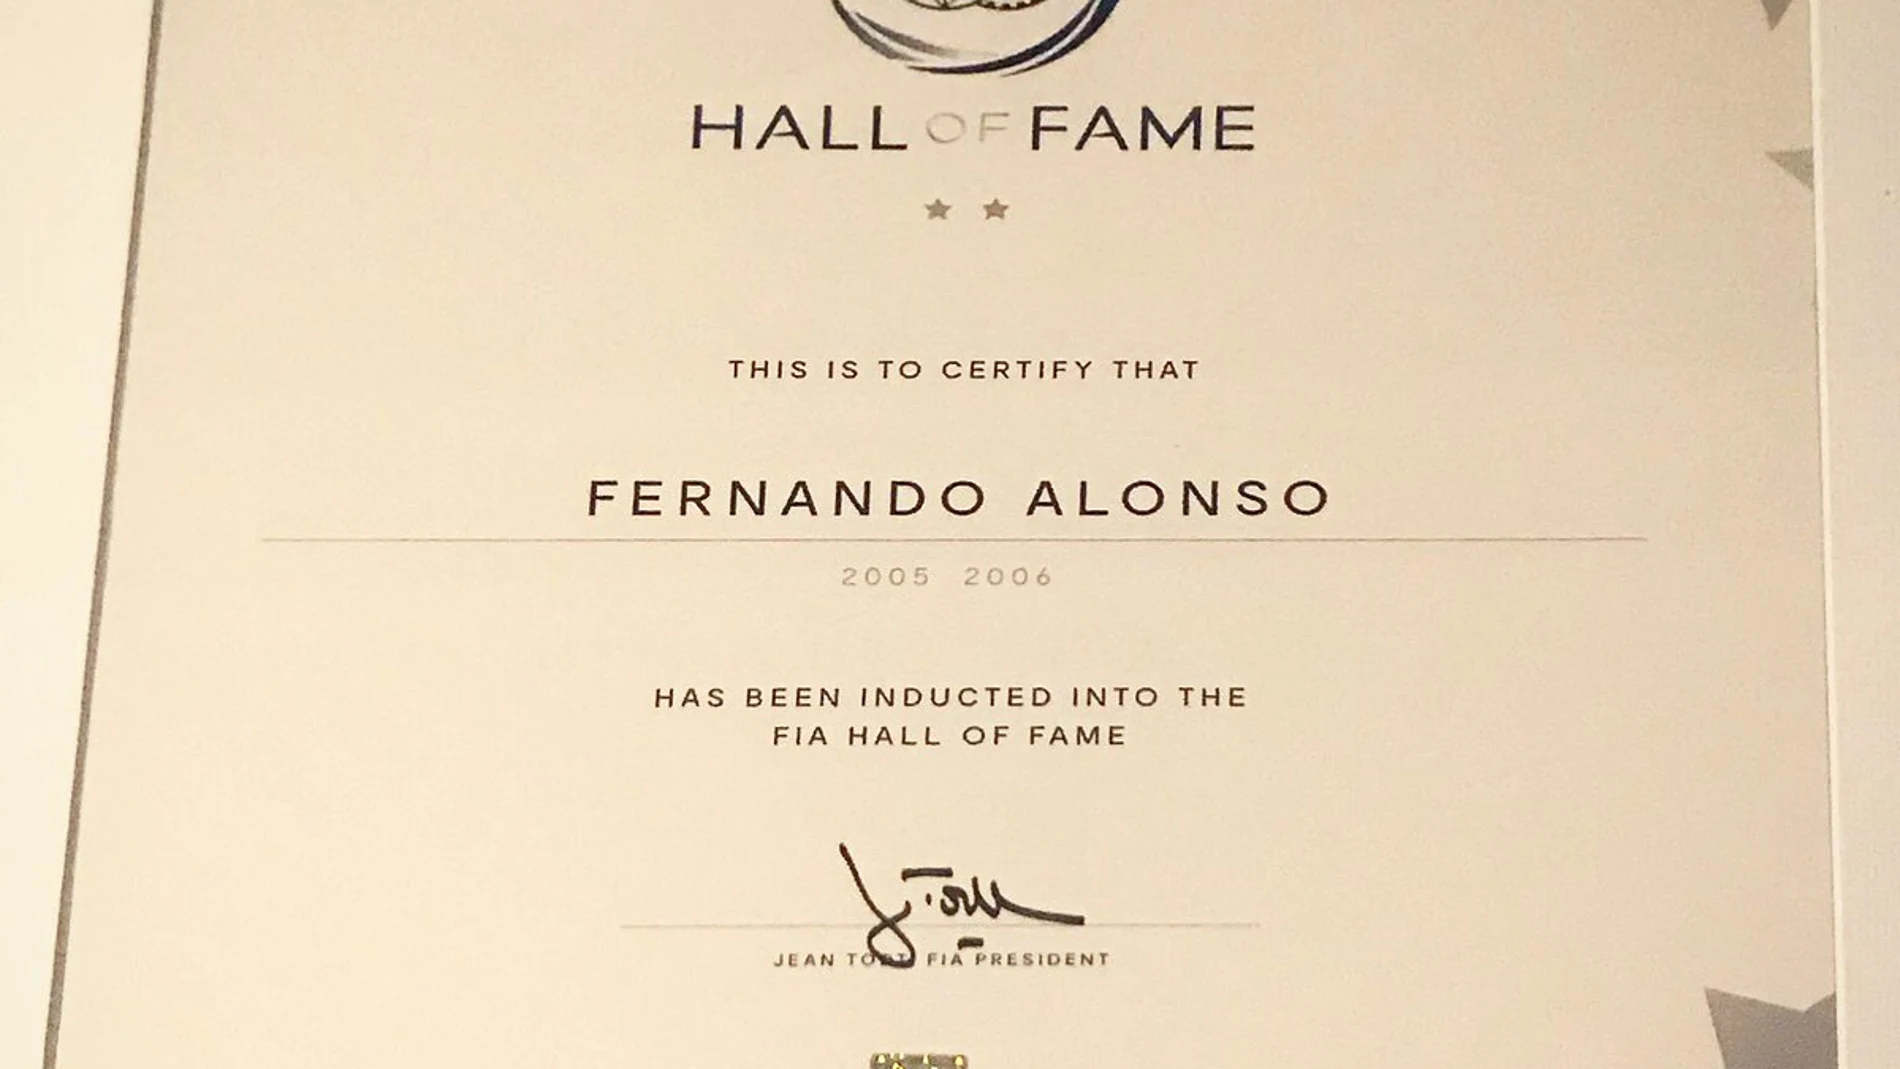 El escrito que certifica la entrada de Alonso en el Hall of Fame de la FIA